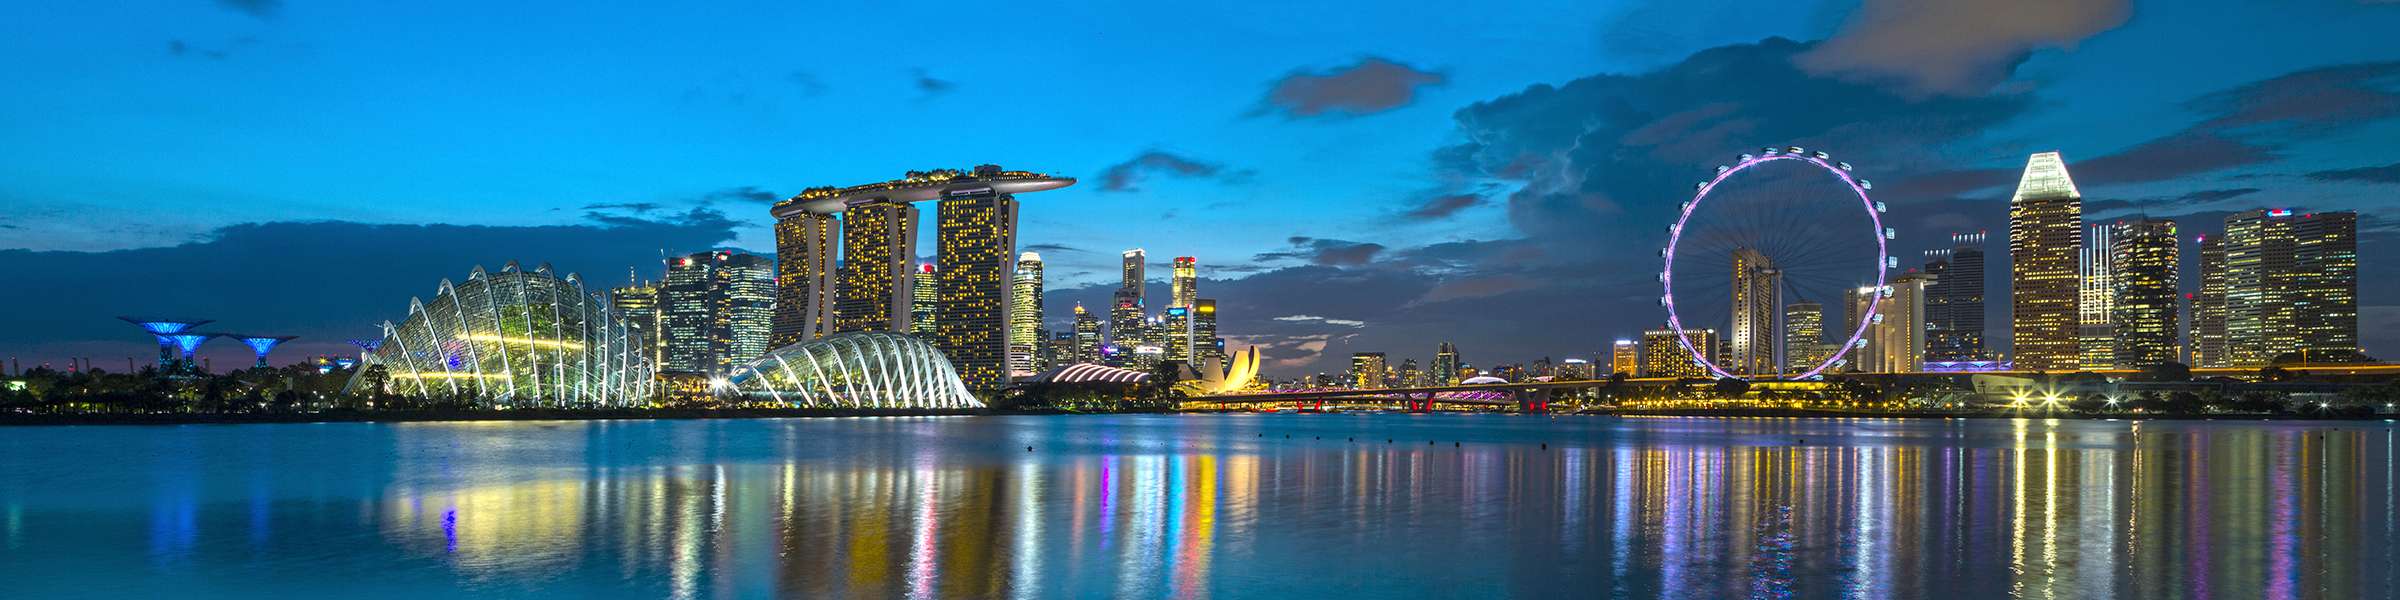 Panoramaaufnahme der Marina Bay in Singapur zur blauen Stunde